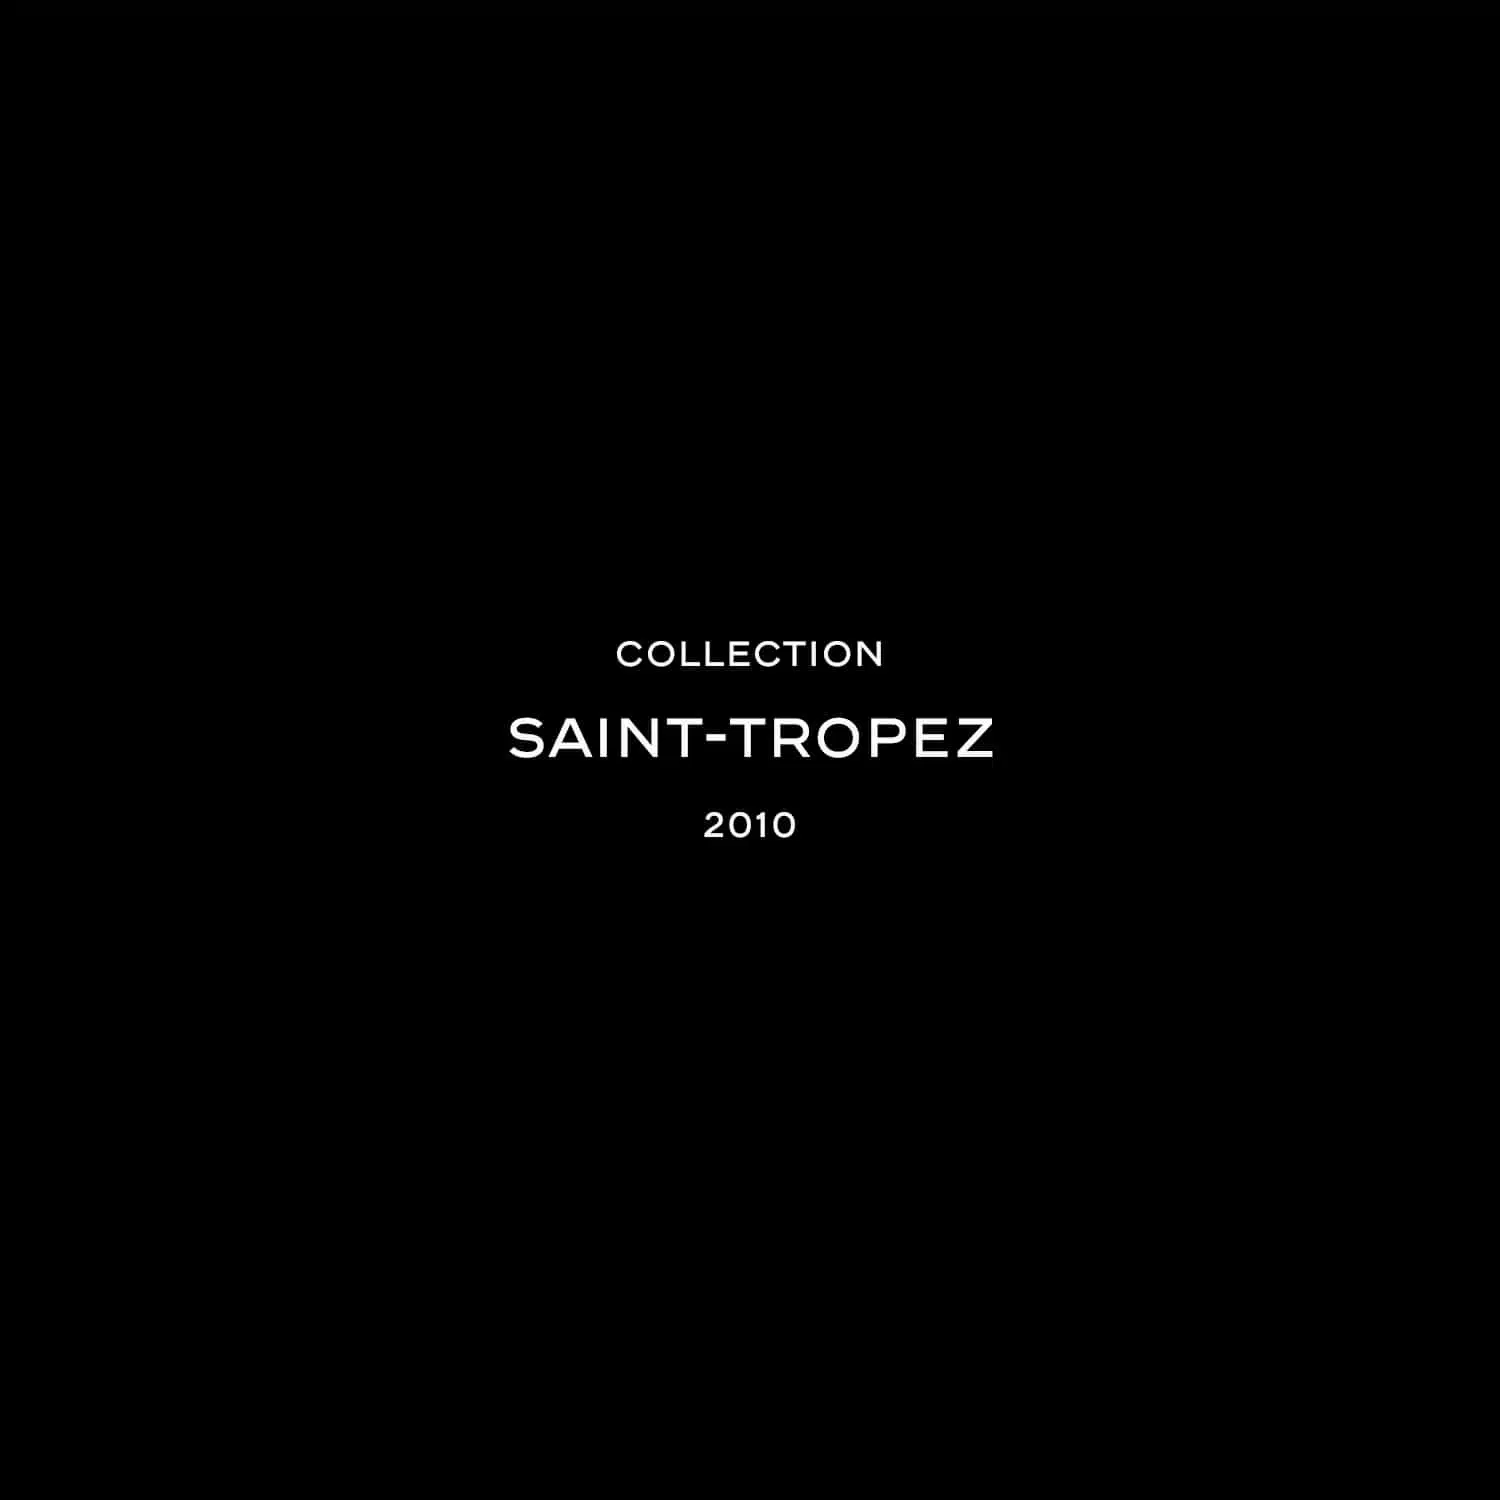 Saint-Tropez Collection